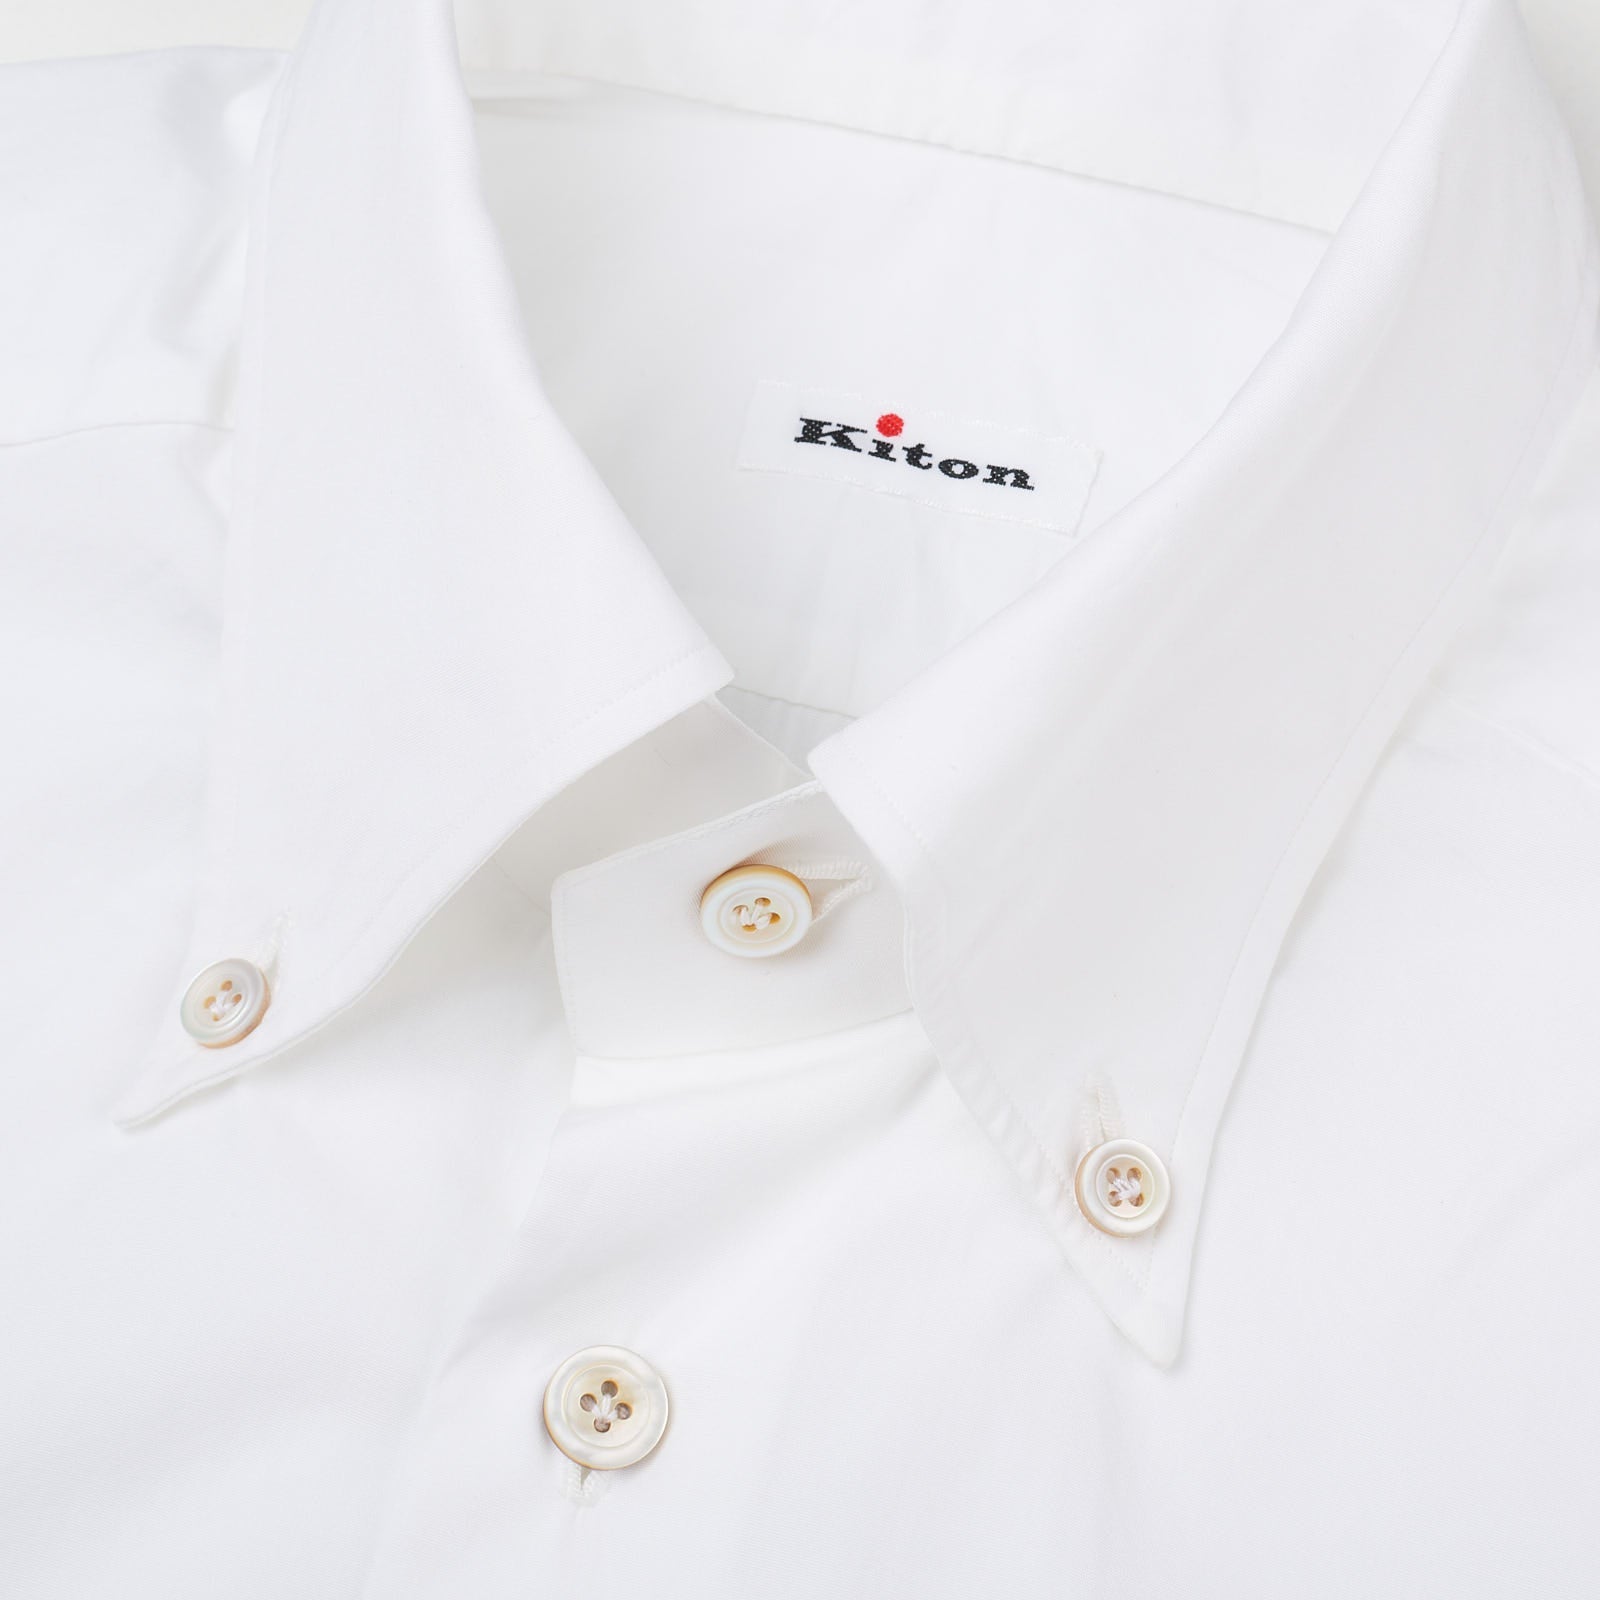 KITON Napoli Handmade White Cotton Poplin Button-Down Shirt 39 NEW US 15.5 KITON